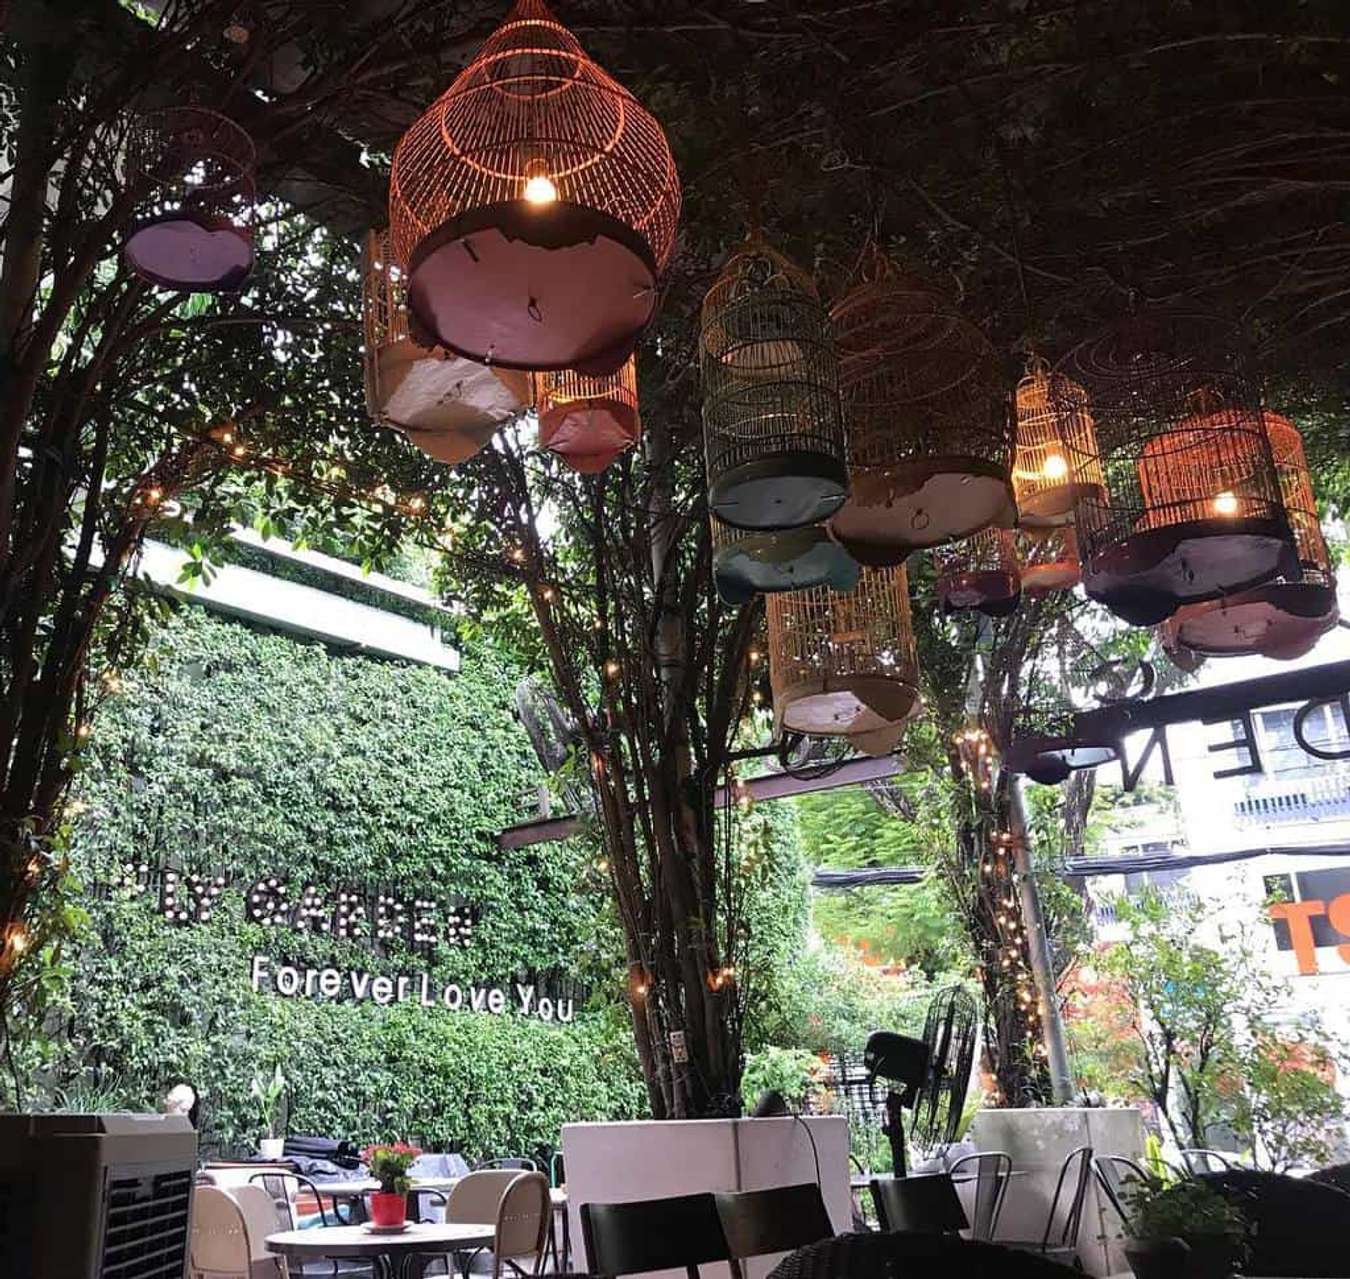 Bước vào không gian xanh mát của quán cà phê sân vườn giữa Sài Gòn, bạn sẽ cảm nhận được sự thanh bình và thoải mái giữa trung tâm đô thị đông đúc.